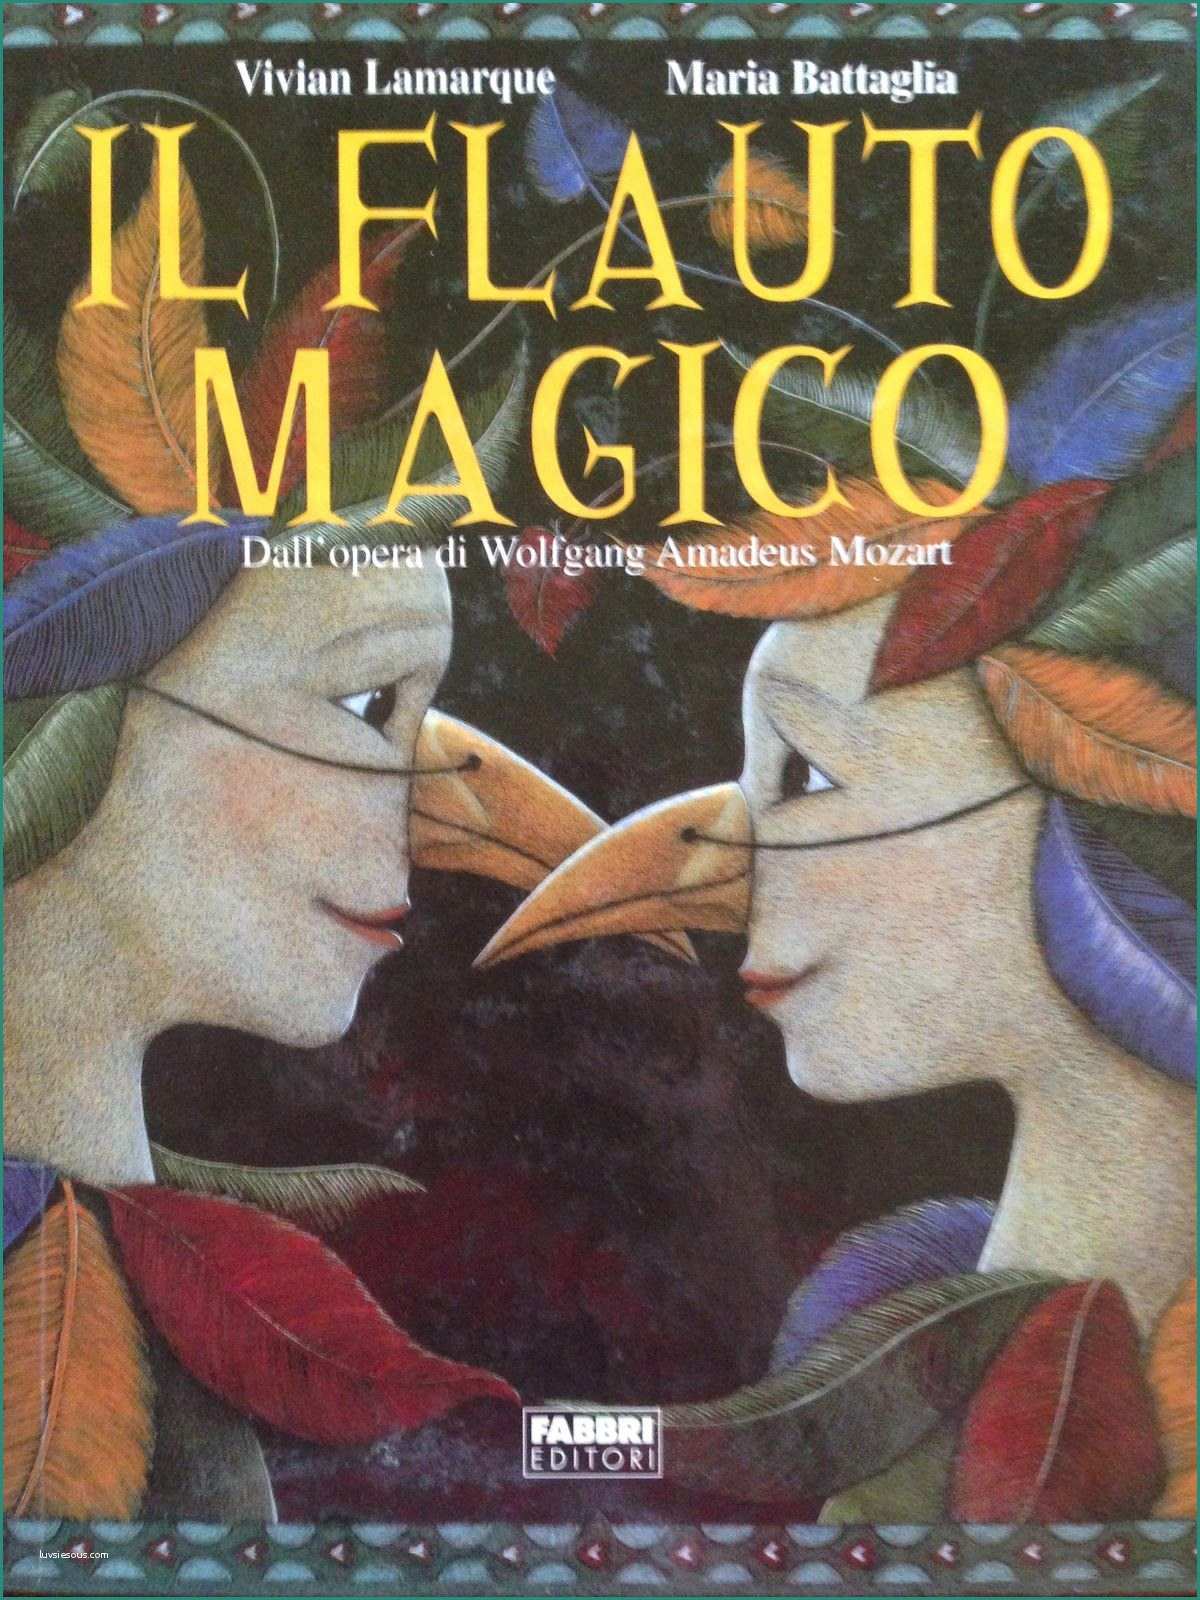 Copertine Per Quaderni Di Italiano E Piccoli Viaggi Musicali Libro Di Lettura Il Flauto Magico 10